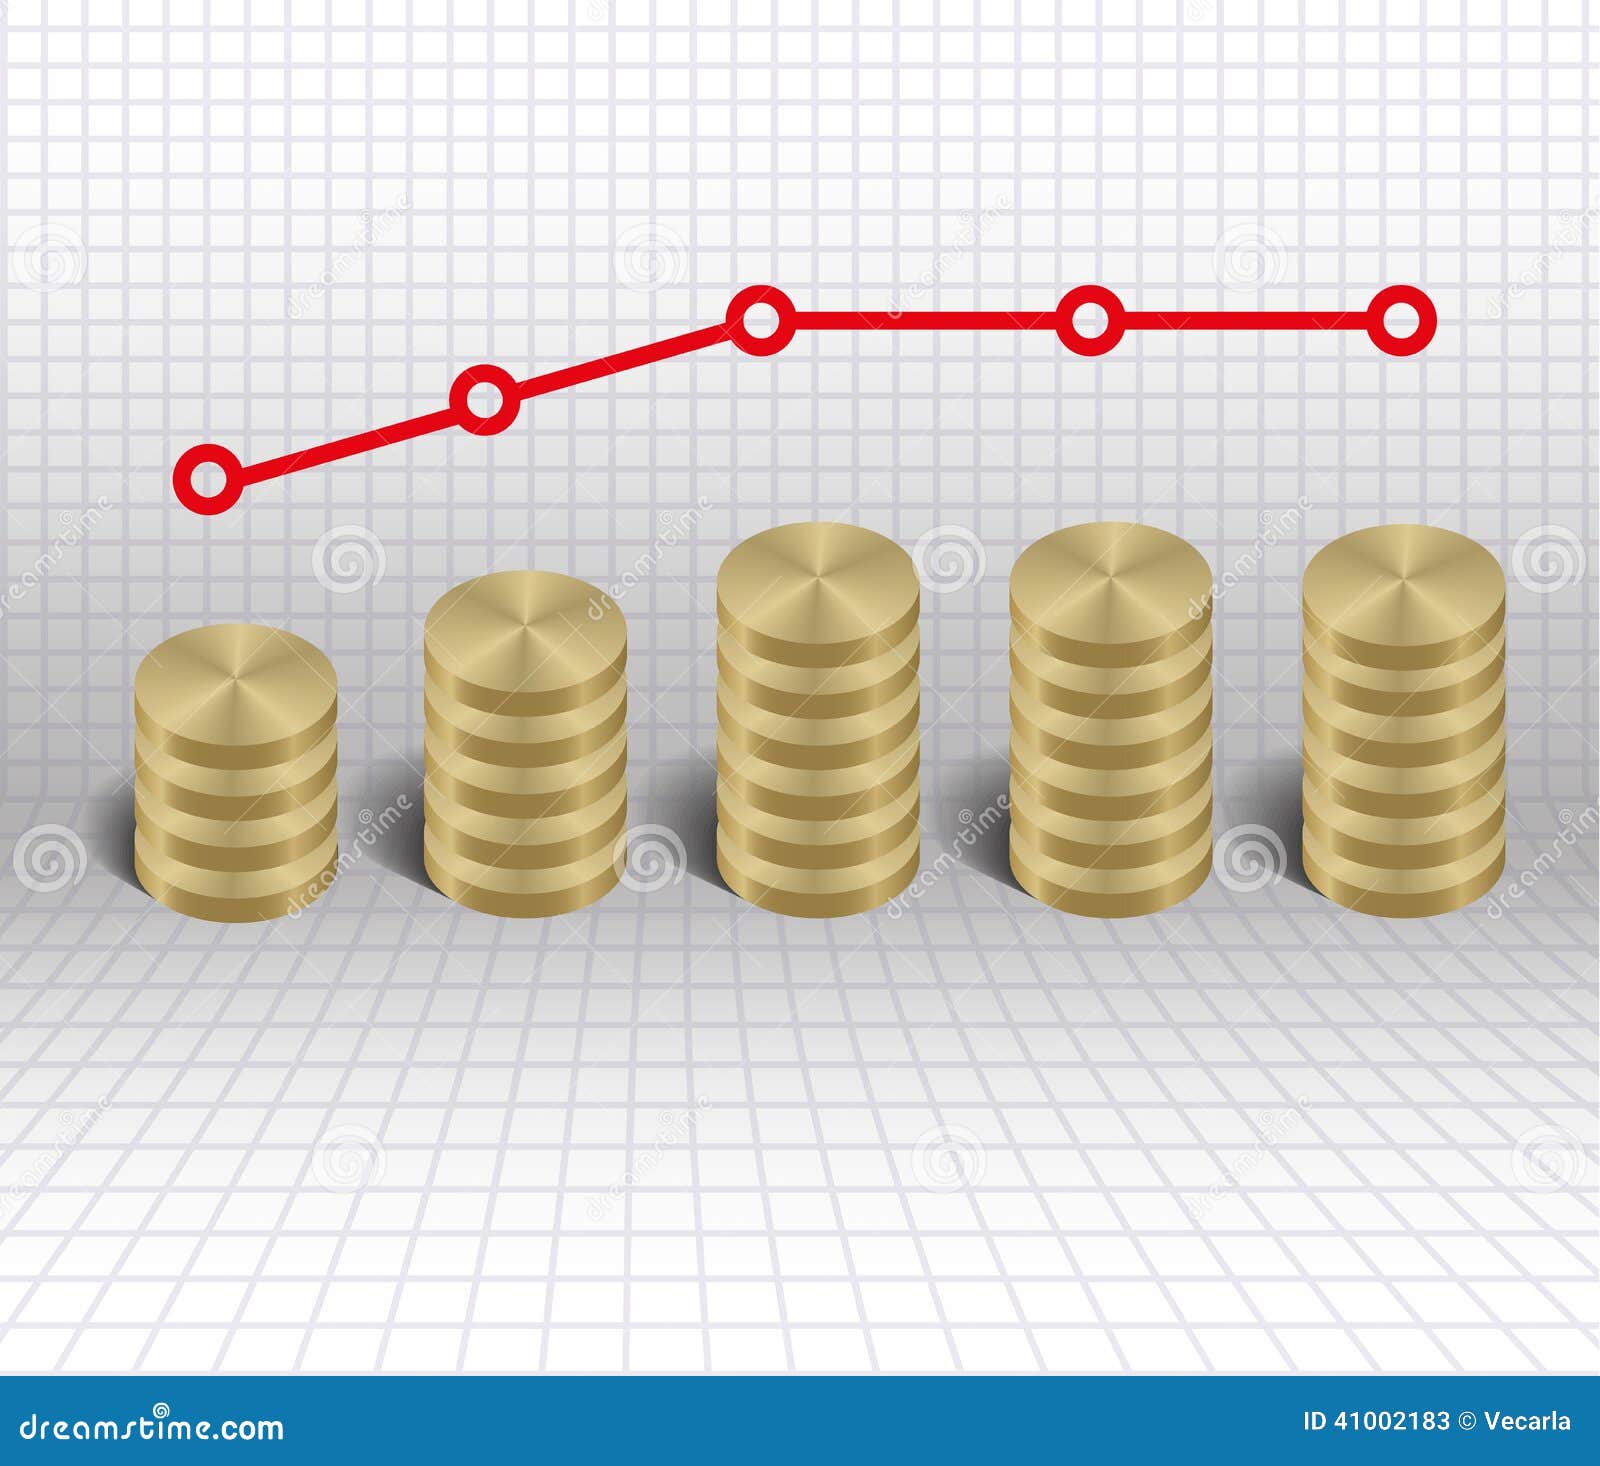 economic stagnation graph gold coins